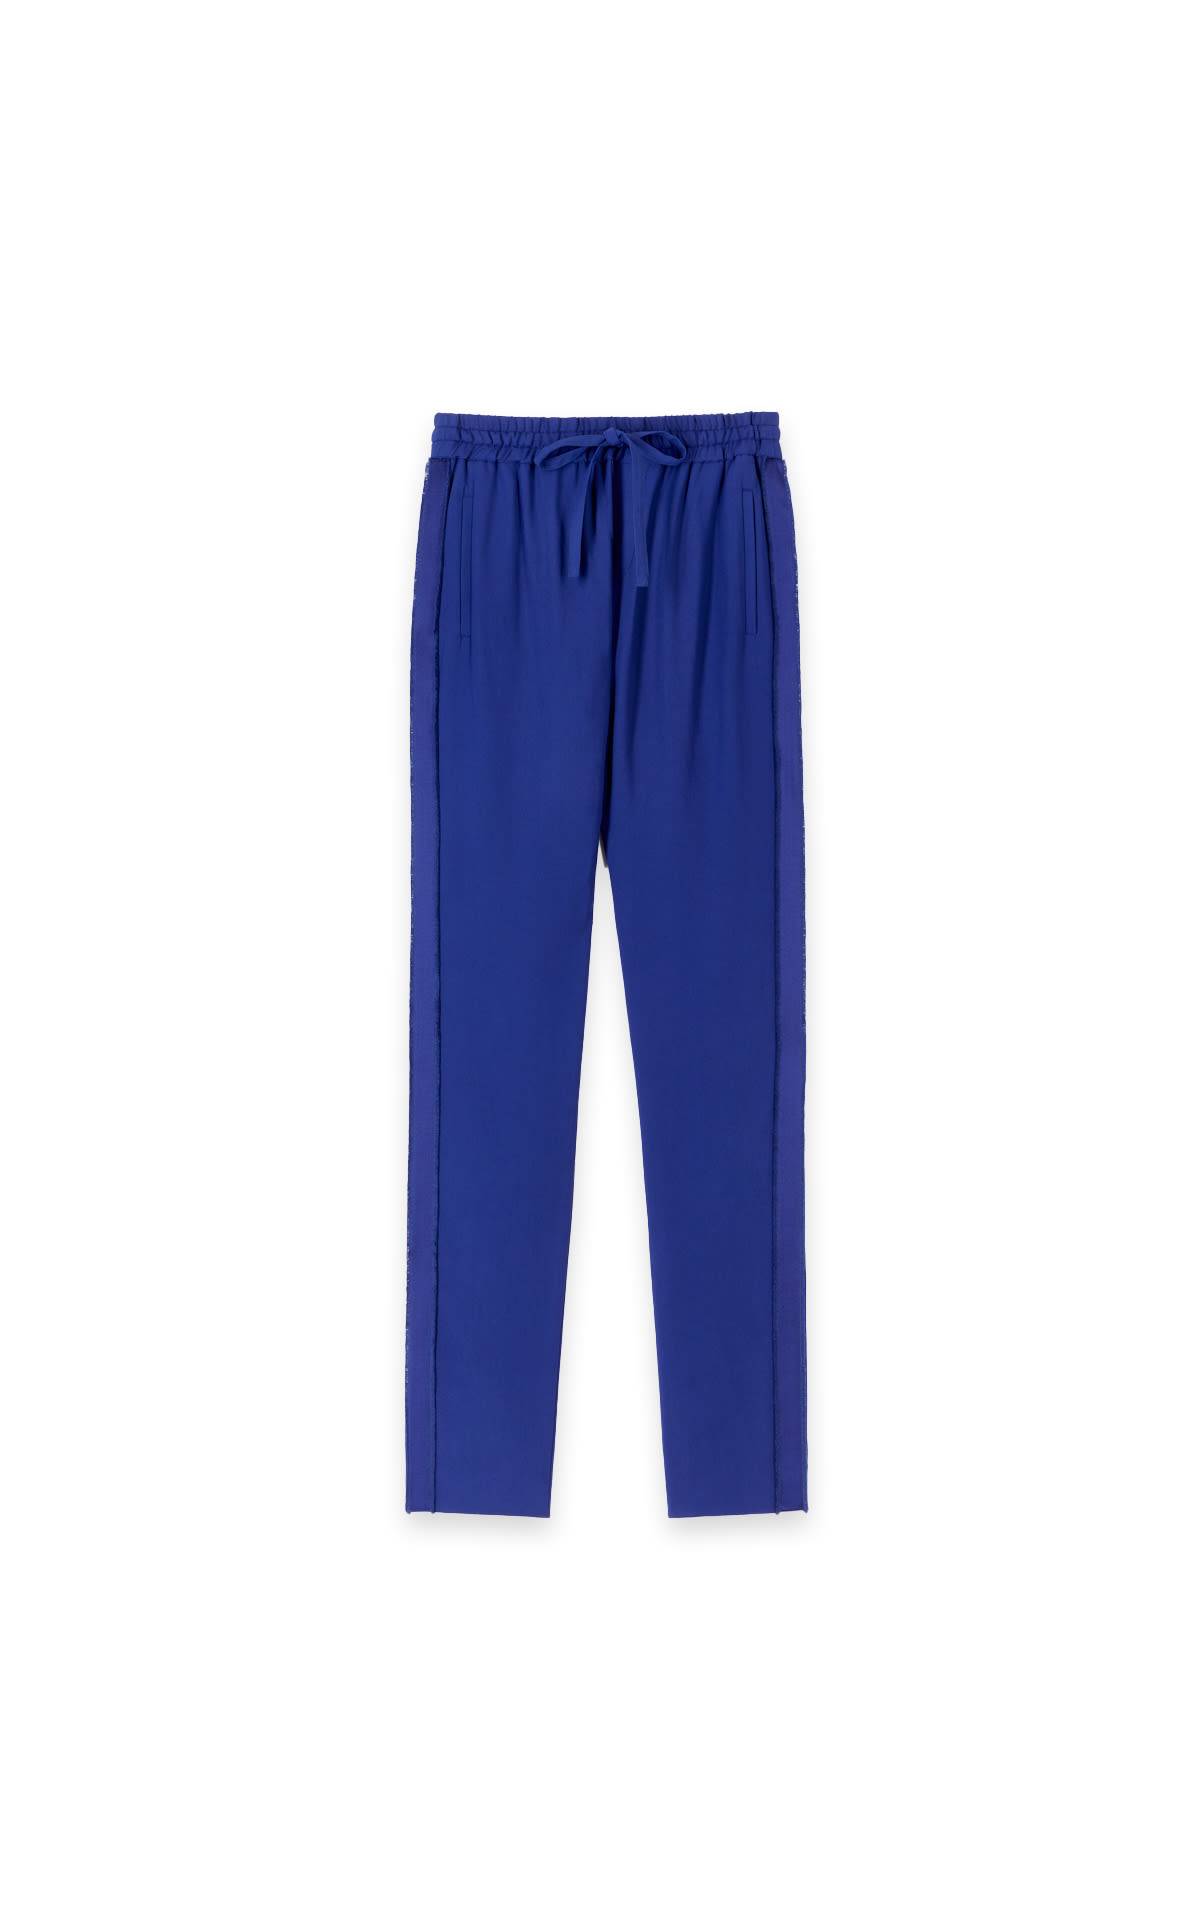 Pantalon bleu de chine* 